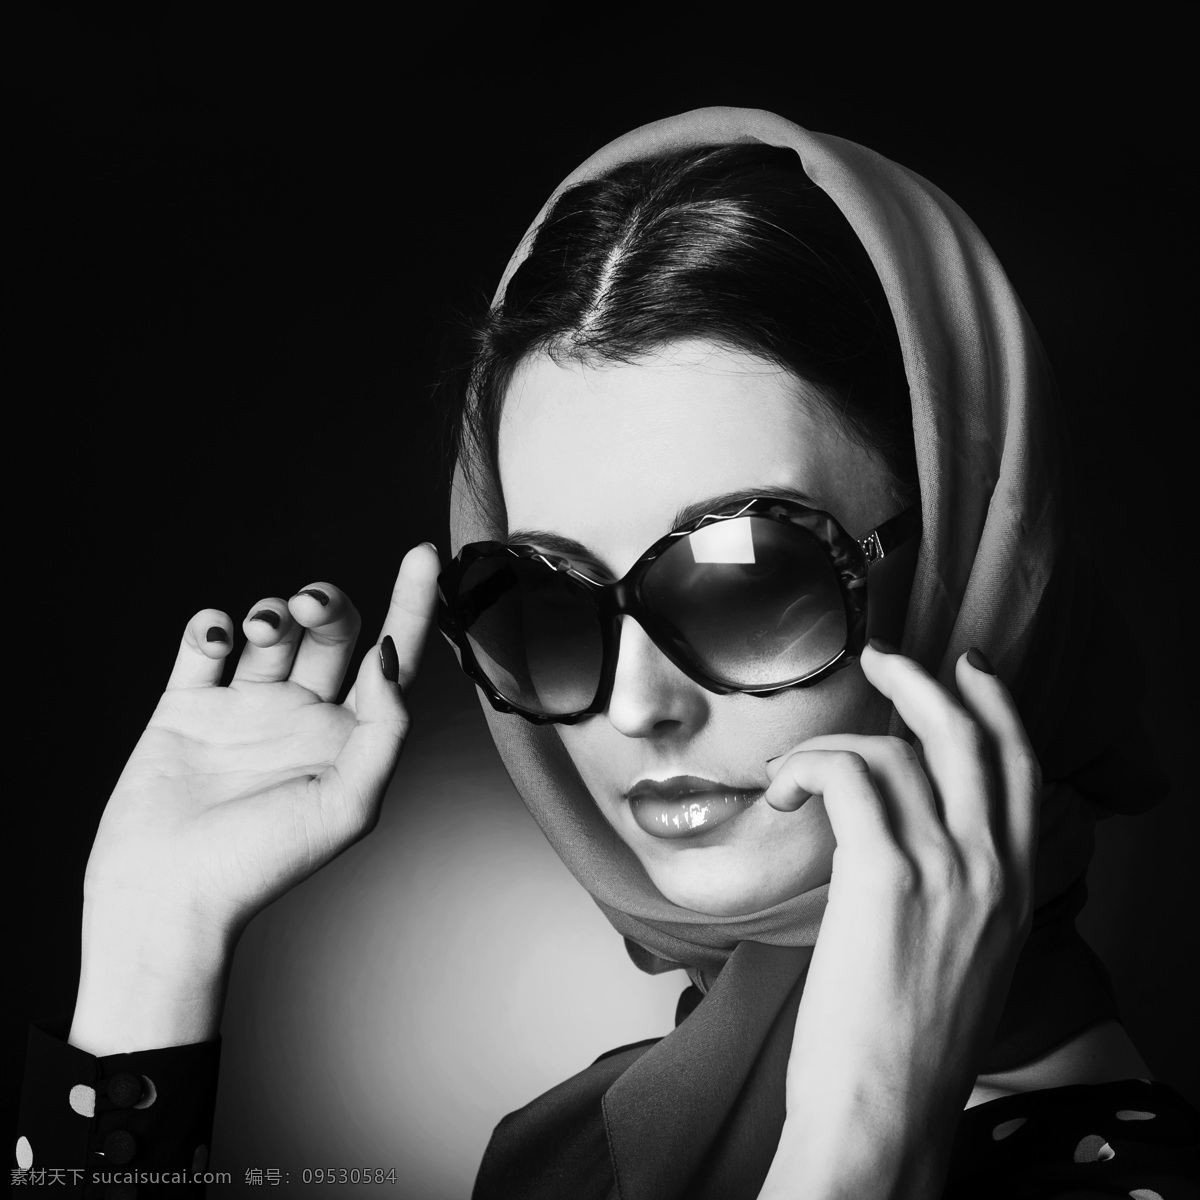 戴 眼镜 美女 黑白 照片 墨镜 头巾 女人 外国女人 美女图片 人物图片